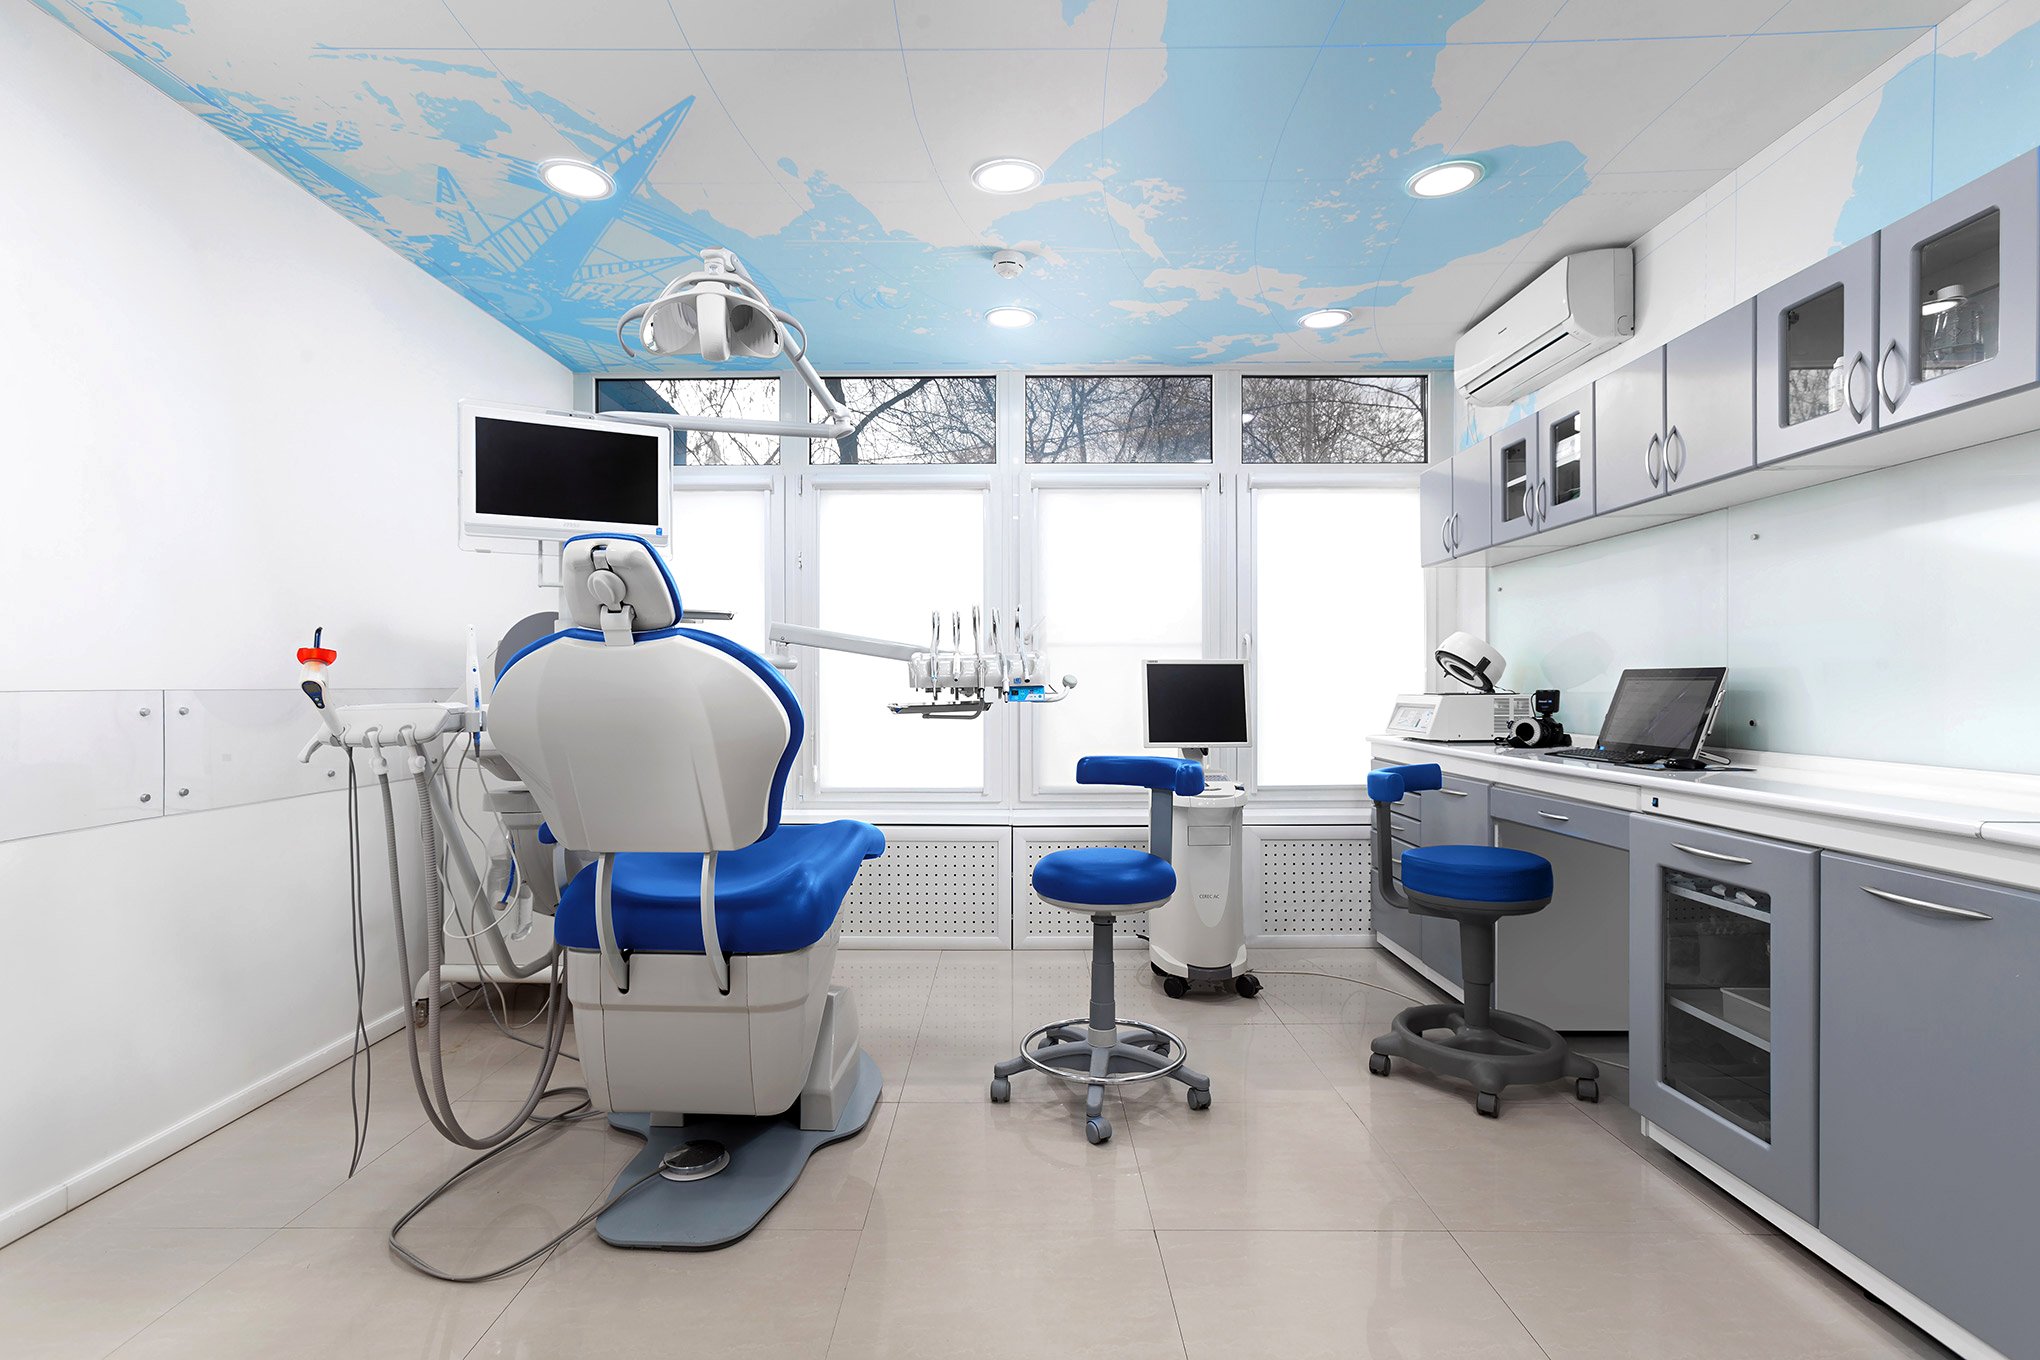 Медцентр 64. Стоматологический кабинет. Стоматология кабинет. Стоматологическа клиника. Оснащение стоматологического кабинета.